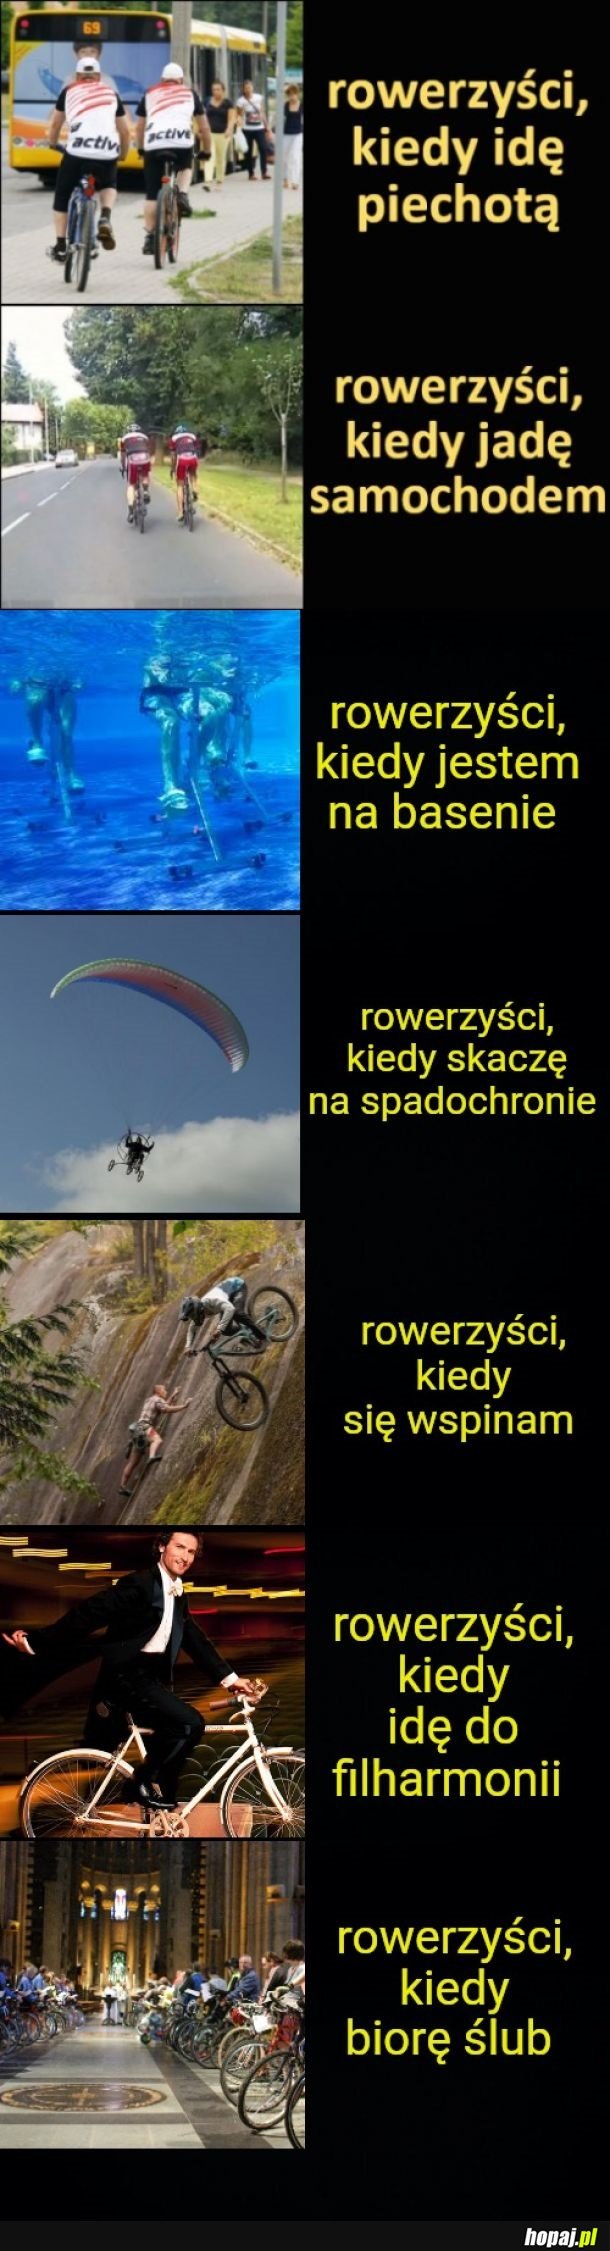 O--O rowerzyści kiedy wpisuje tytuł mema